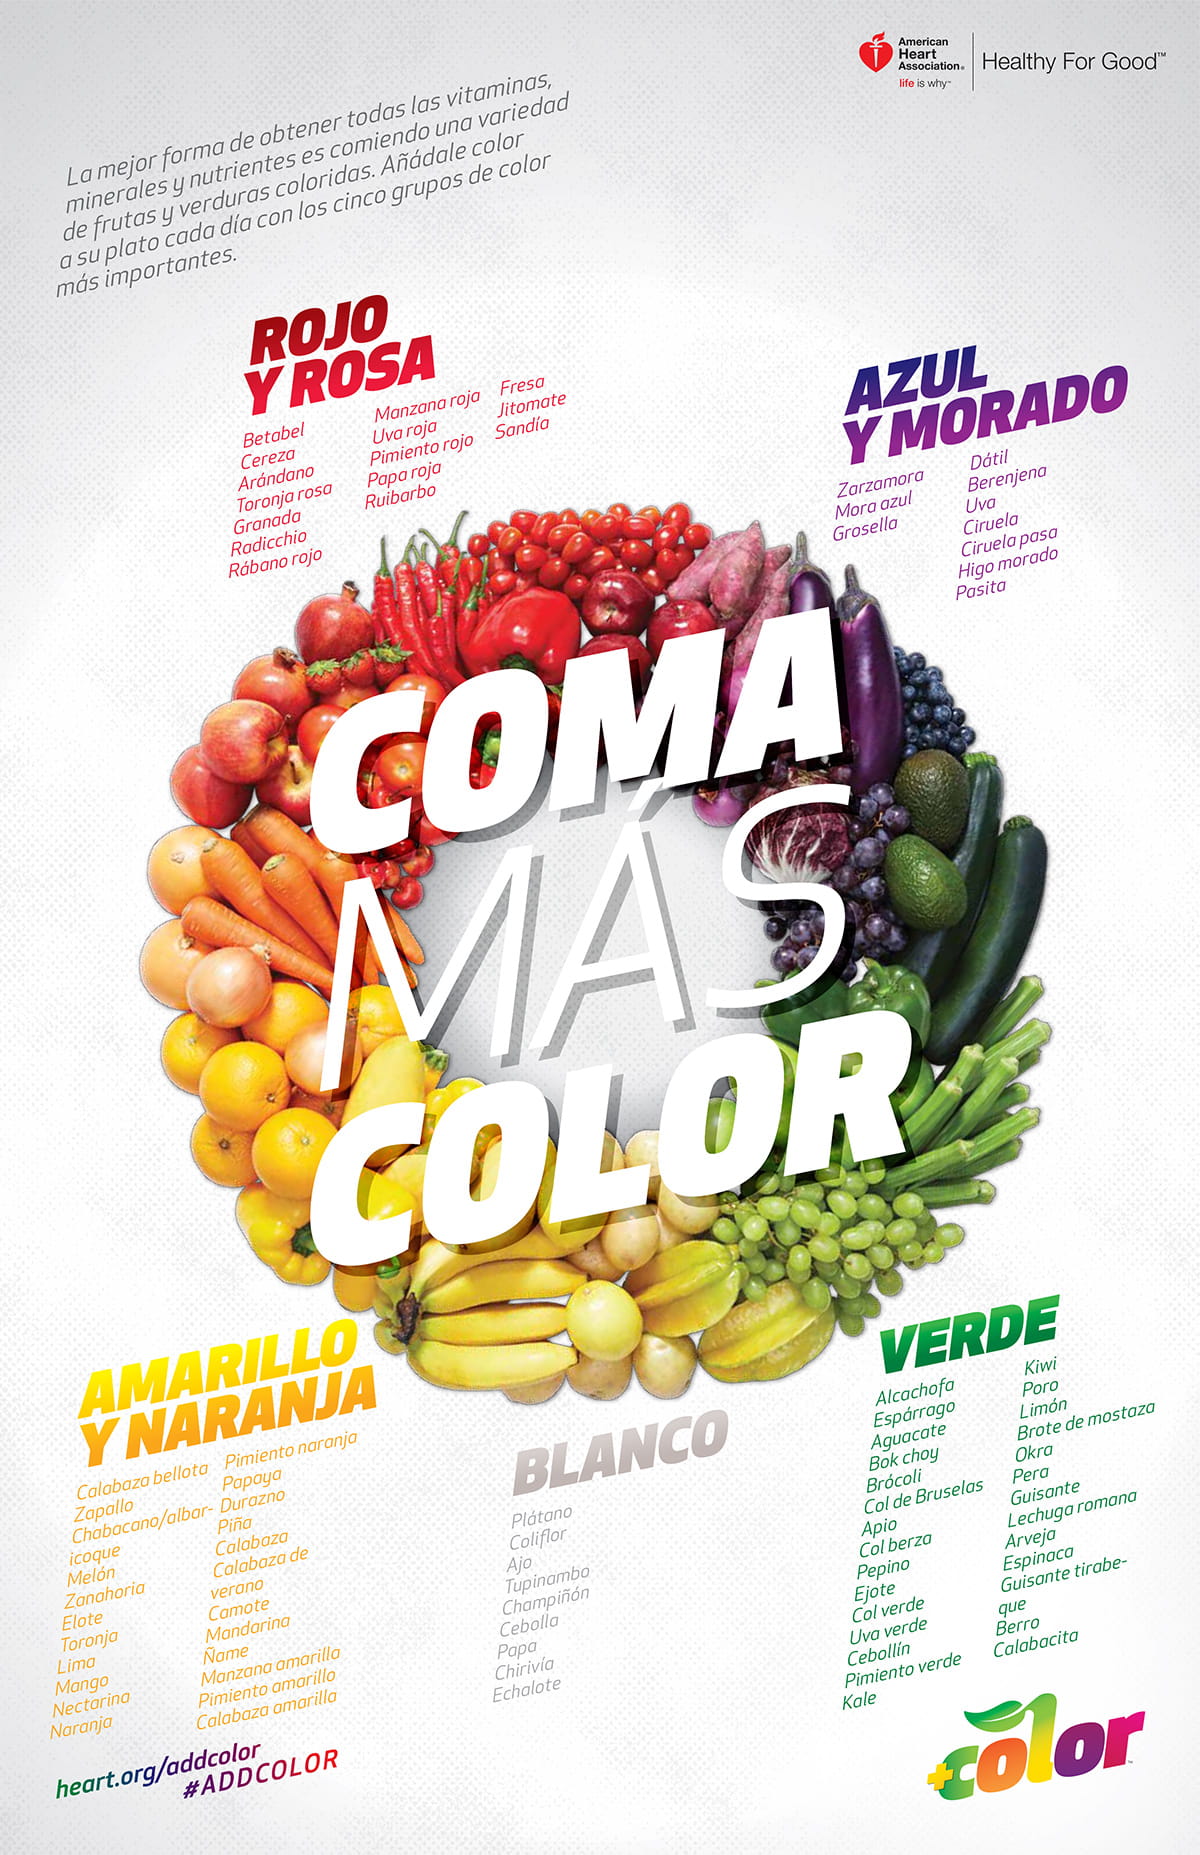 多吃西班牙语彩色信息图